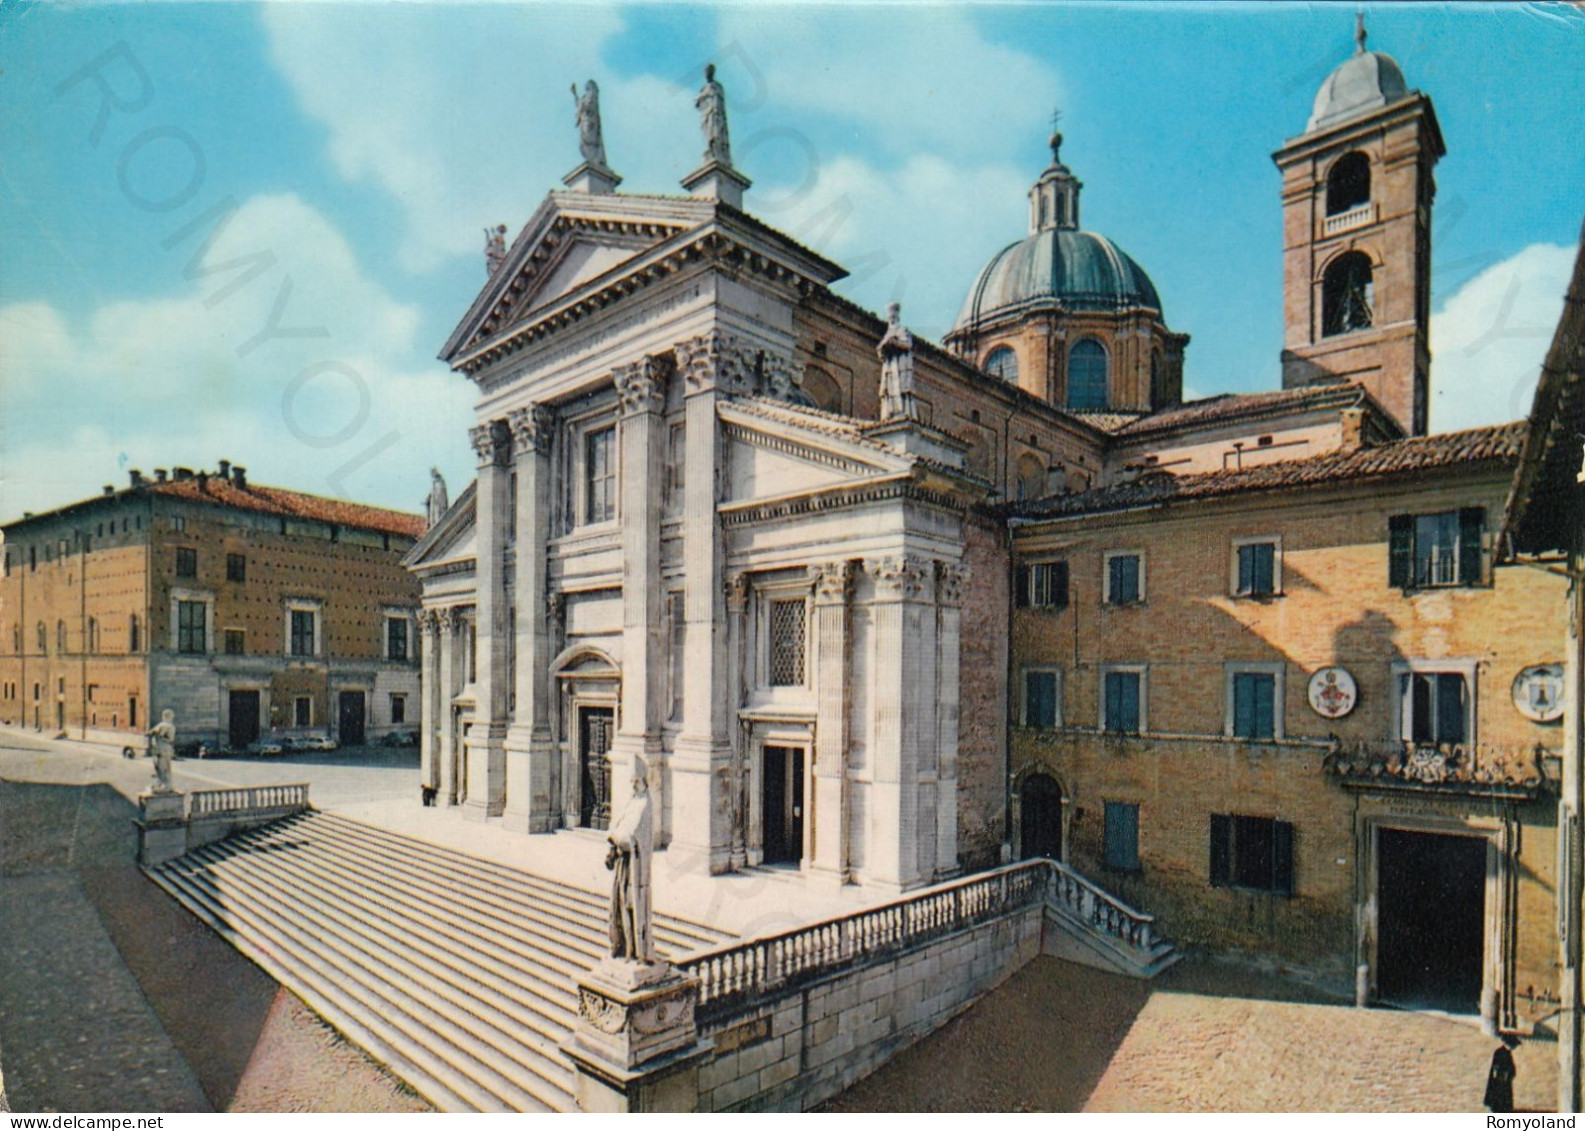 CARTOLINA  URBINO,MARCHE-CATTEDRALE (sec.XVIII)-STORIA,CULTURA,MEMORIA,RELIGIONE,IMPERO ROMANO,VIAGGIATA 1964 - Urbino